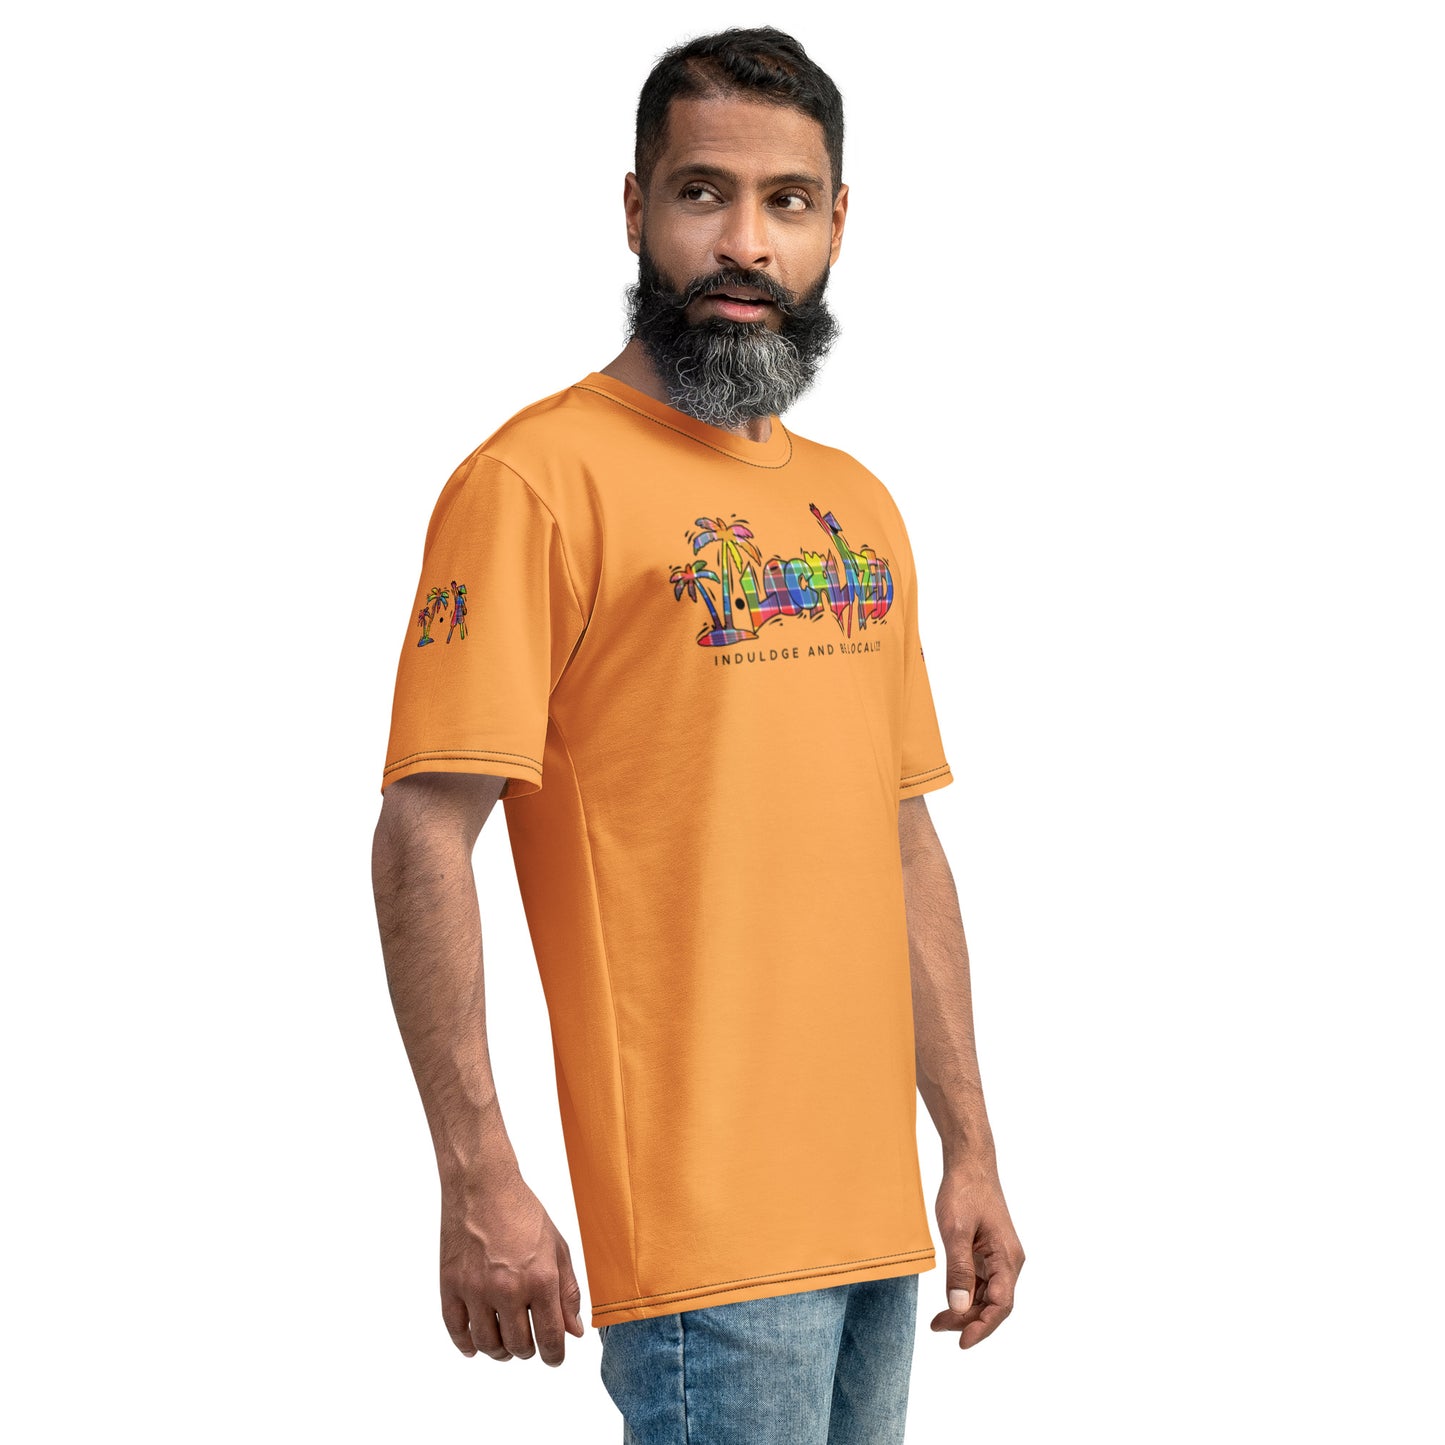 Texas Rose V.Localized (Madras) Men's t-shirt